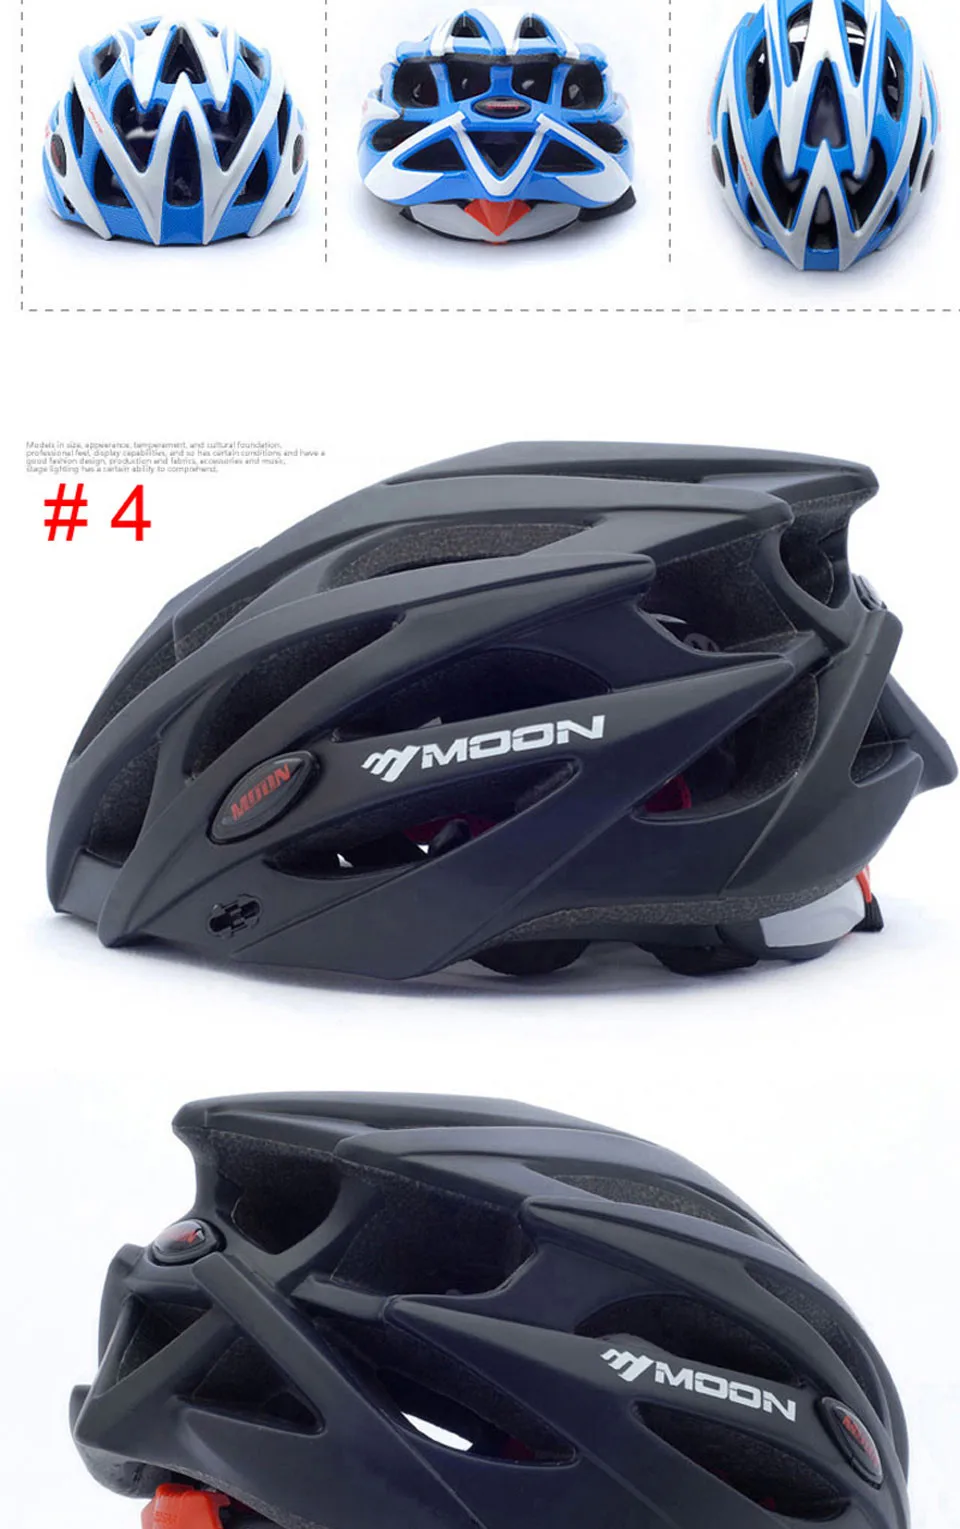 MOON Child велосипедный шлем ультралегкий PC+ EPS велосипедный шлем цельно-Формованный дорожный горный велосипедный шлем 3 цвета CE сертификация